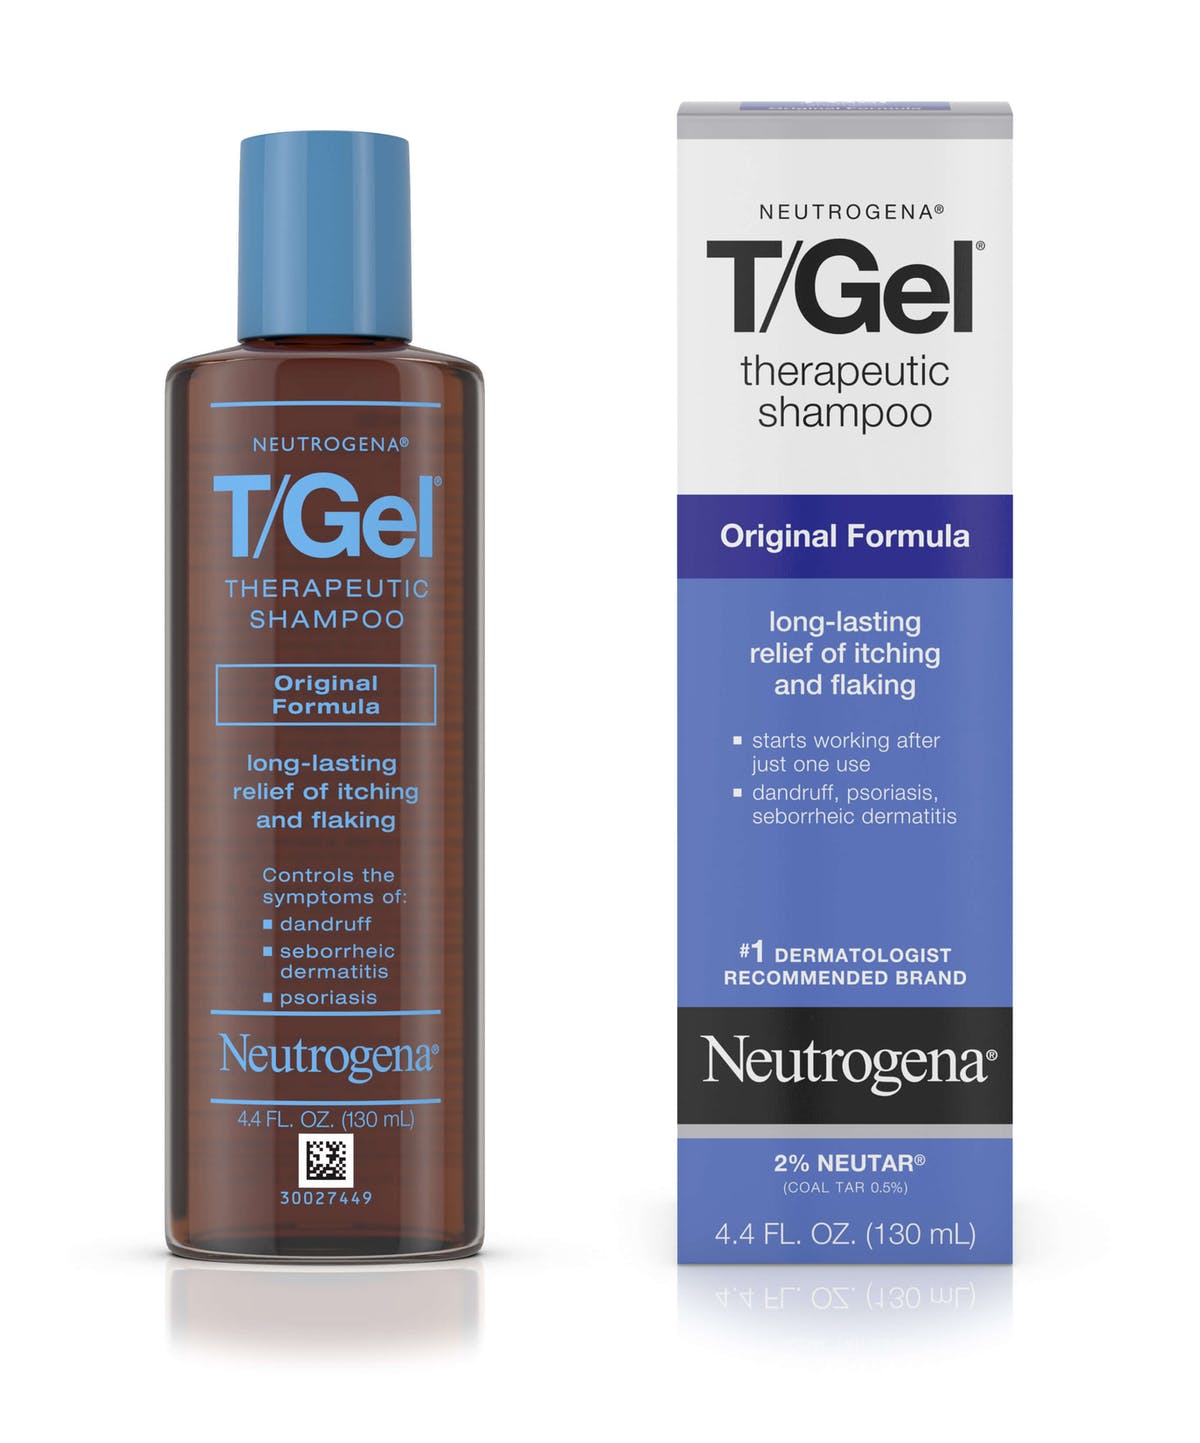 Neutrogena T/Gel Best Shampoo For Dandruff in Pakistan